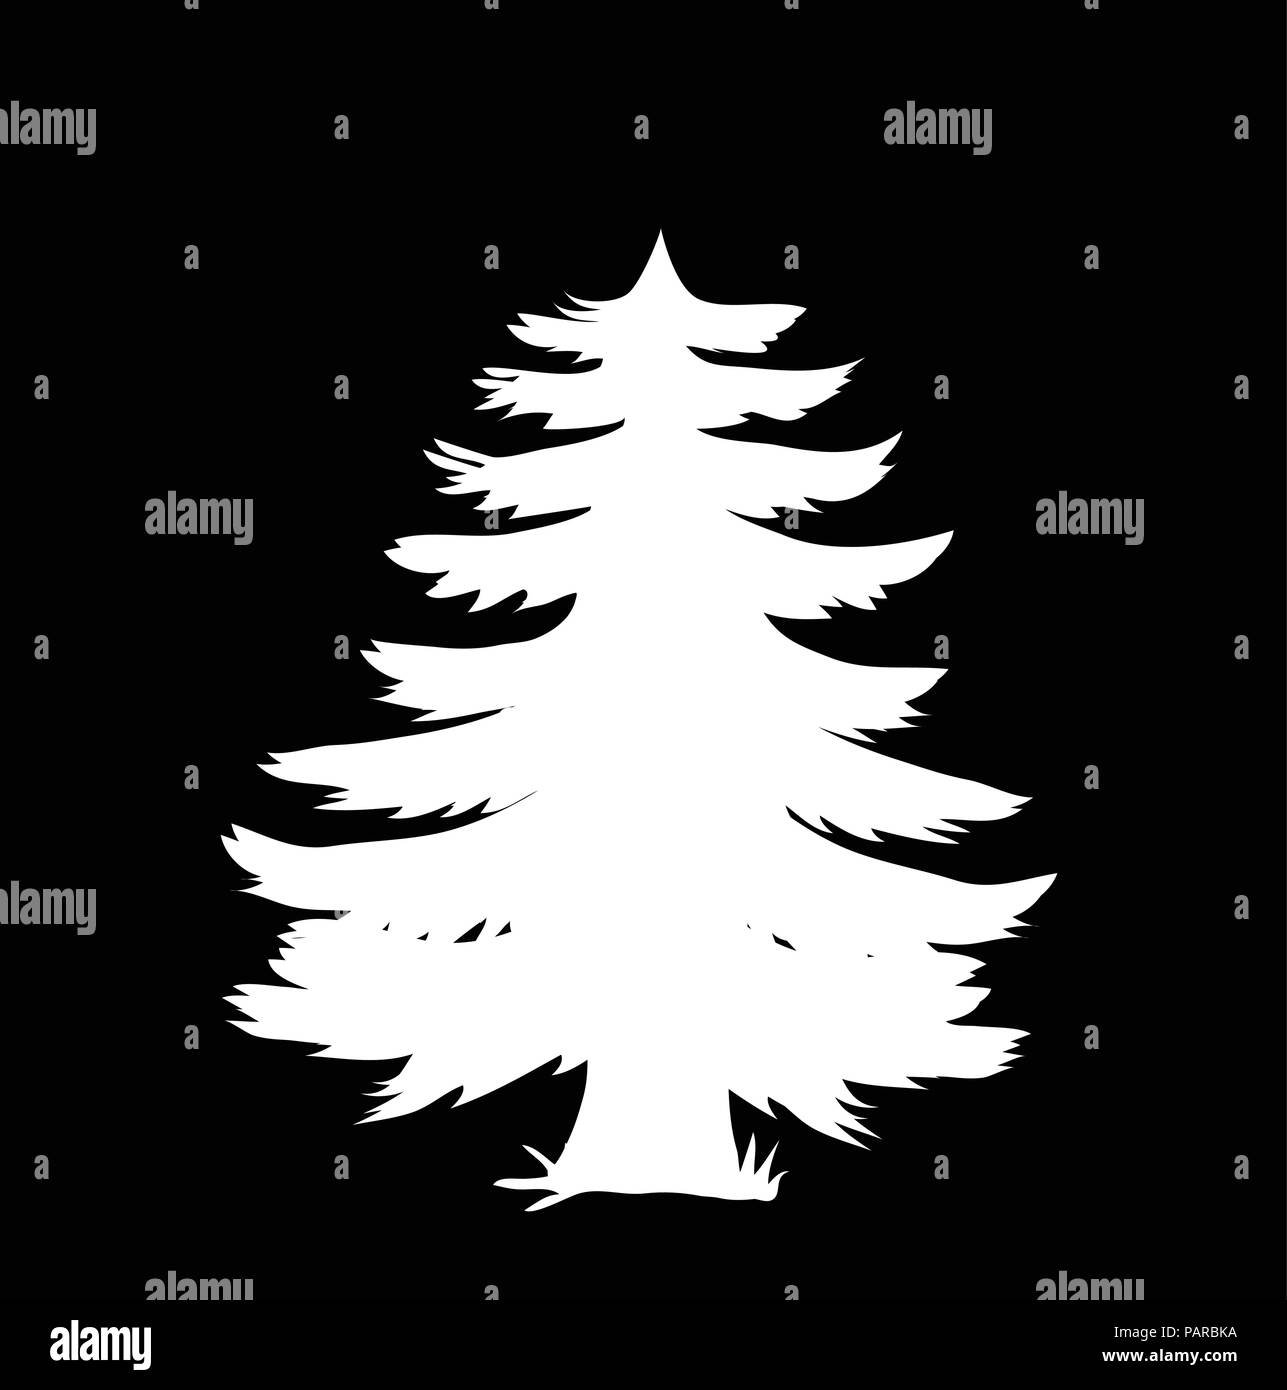 Weiße Silhouette der Nadelhölzer Baum Symbol auf schwarzem Hintergrund isoliert. Vector Illustration, Piktogramm, Zeichen, Vorlagen, Cliparts für Design. Stock Vektor